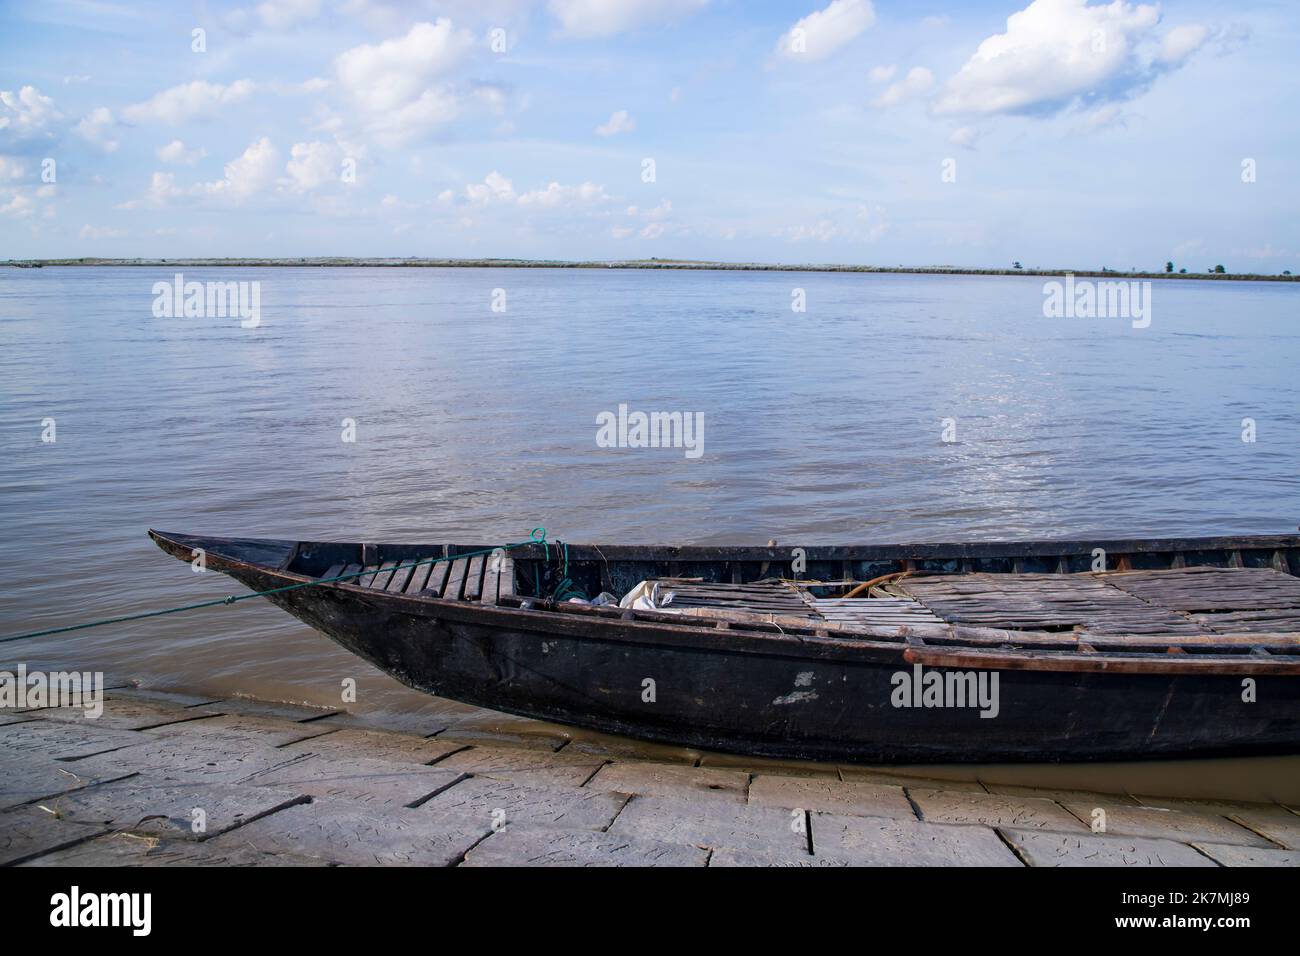 Bel paesaggio Vista di barche da pesca in legno sulla riva del fiume Padma in Bangladesh Foto Stock